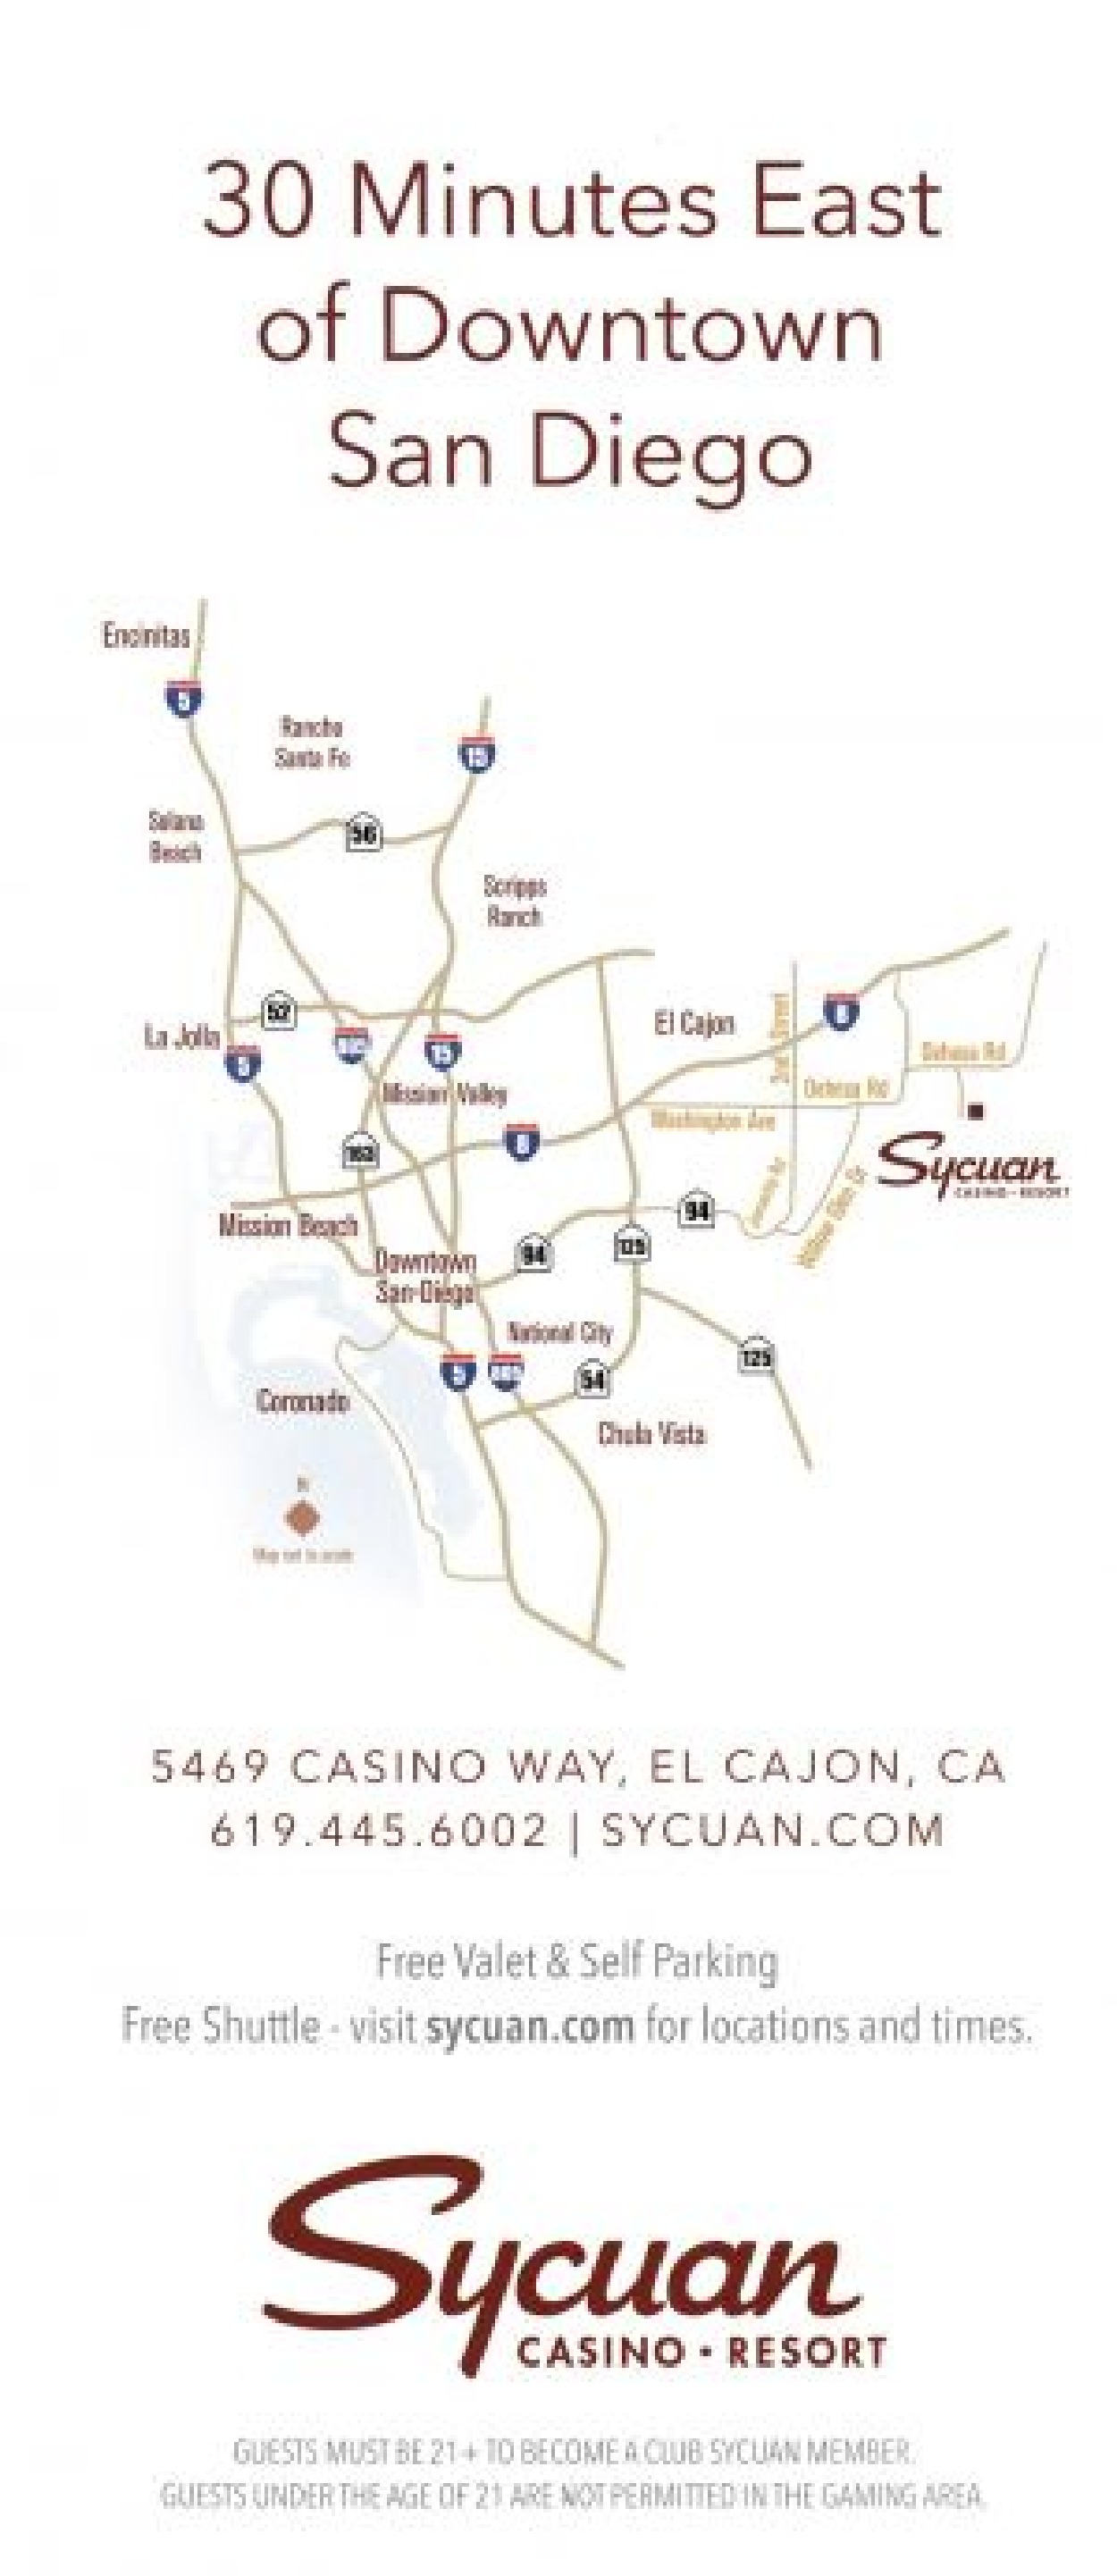 sycuan casino in el cajon california